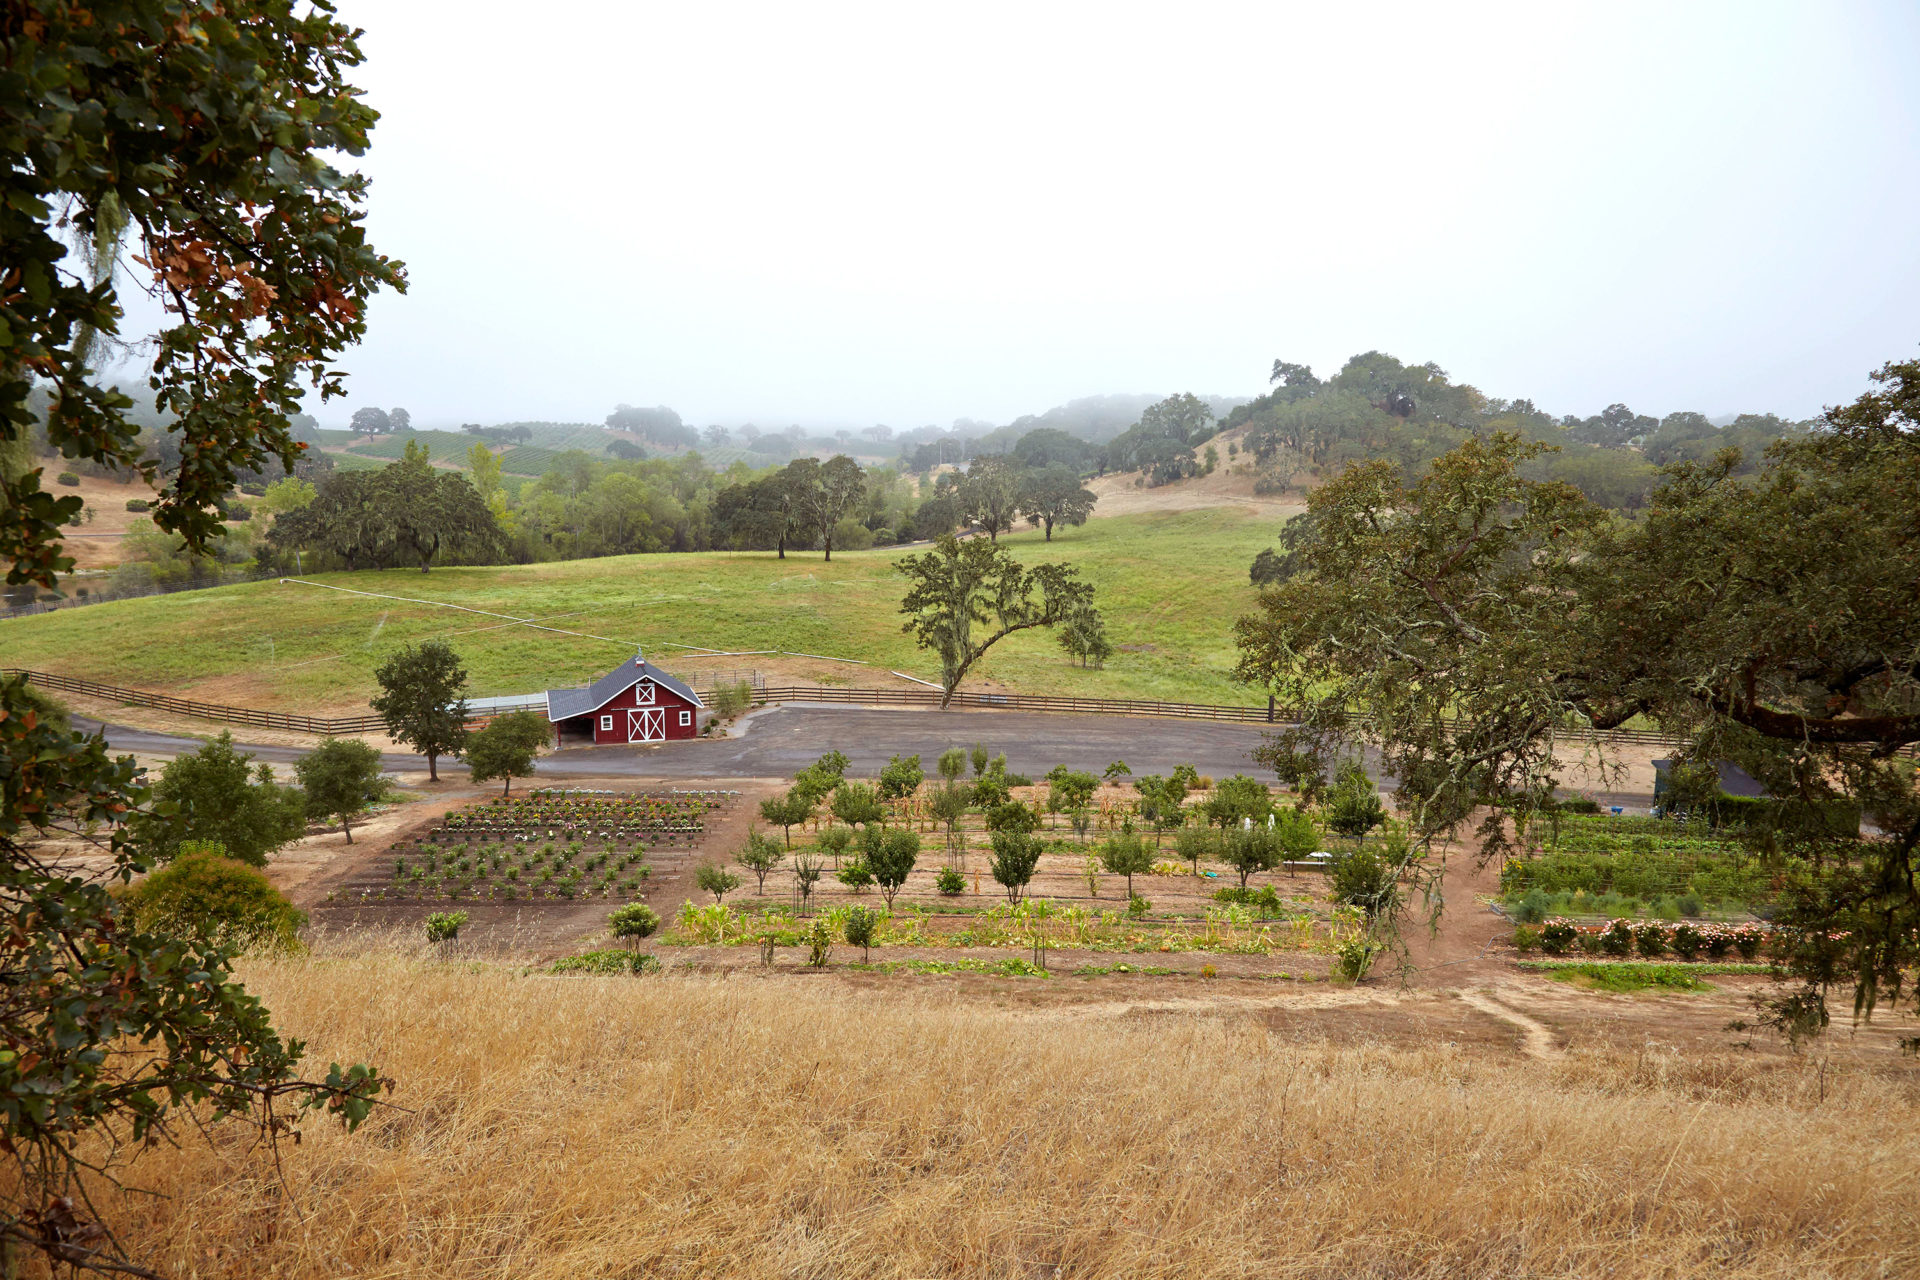 Jordan Winery estate in Healdsburg, California